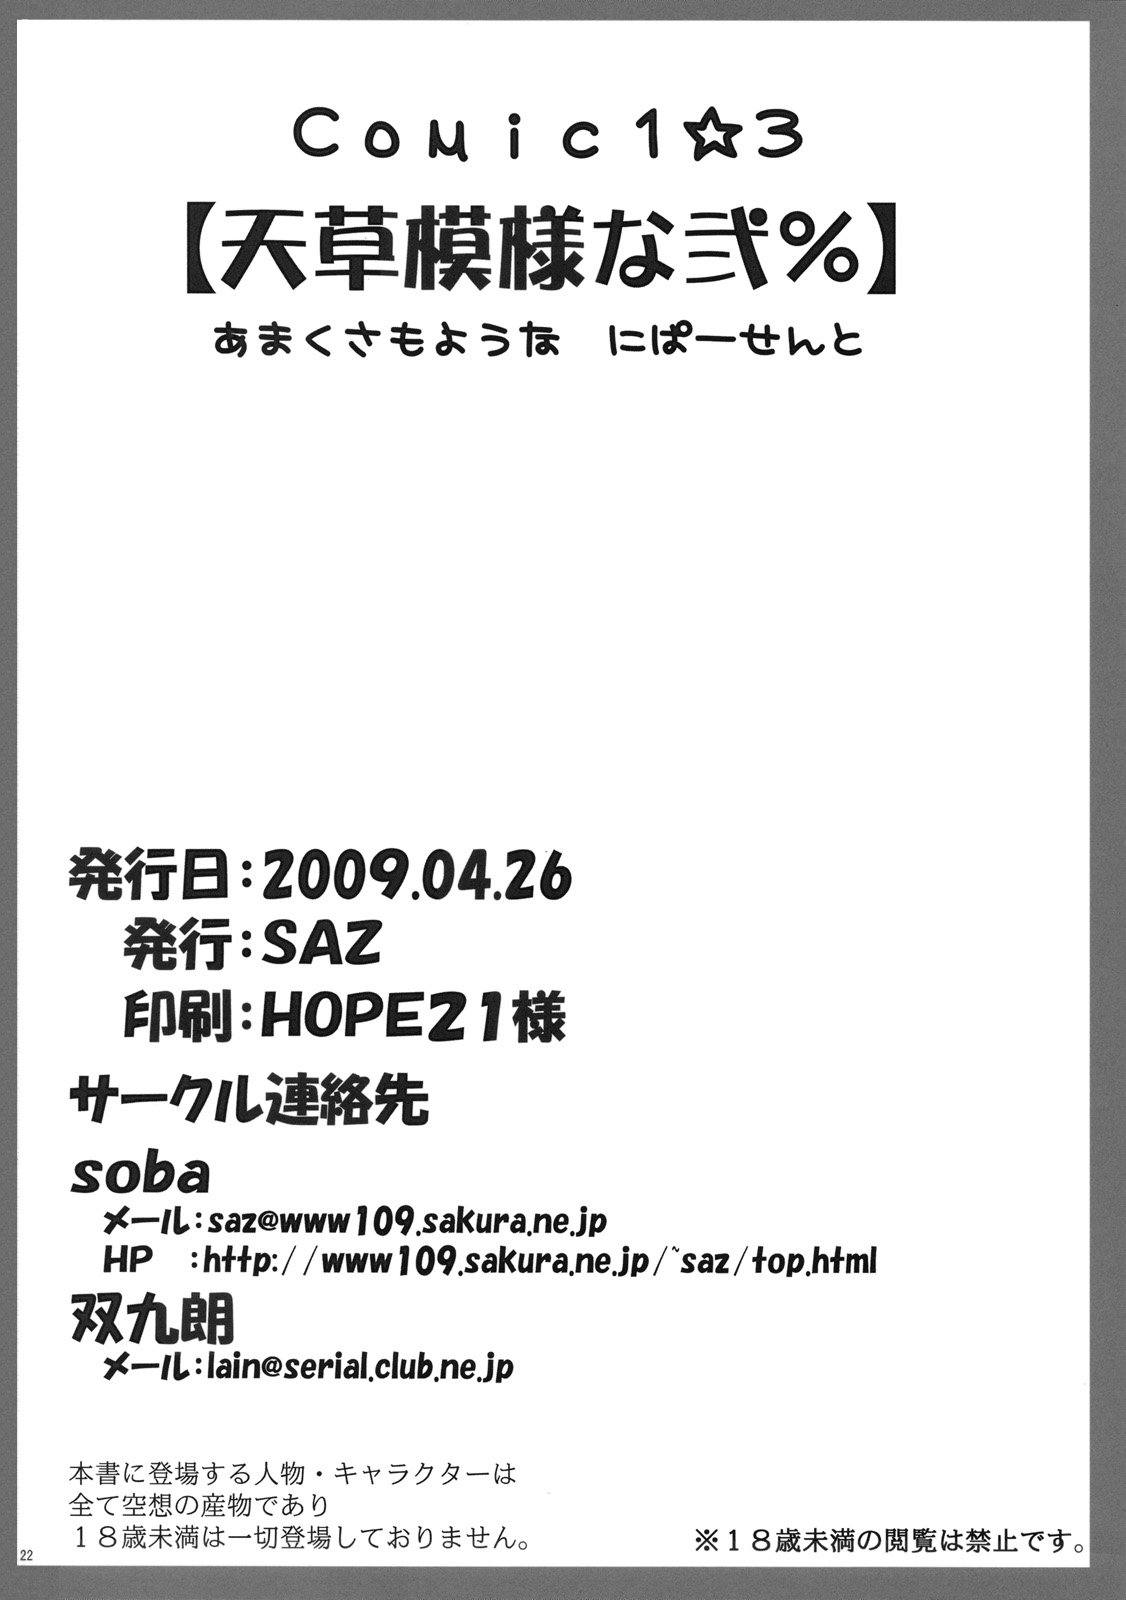 [SAZ] Amakusa Moyou na 2% (Toaru Majutsu no Index) [SAZ] 天草模様な弐% (とある魔術の禁書目録)